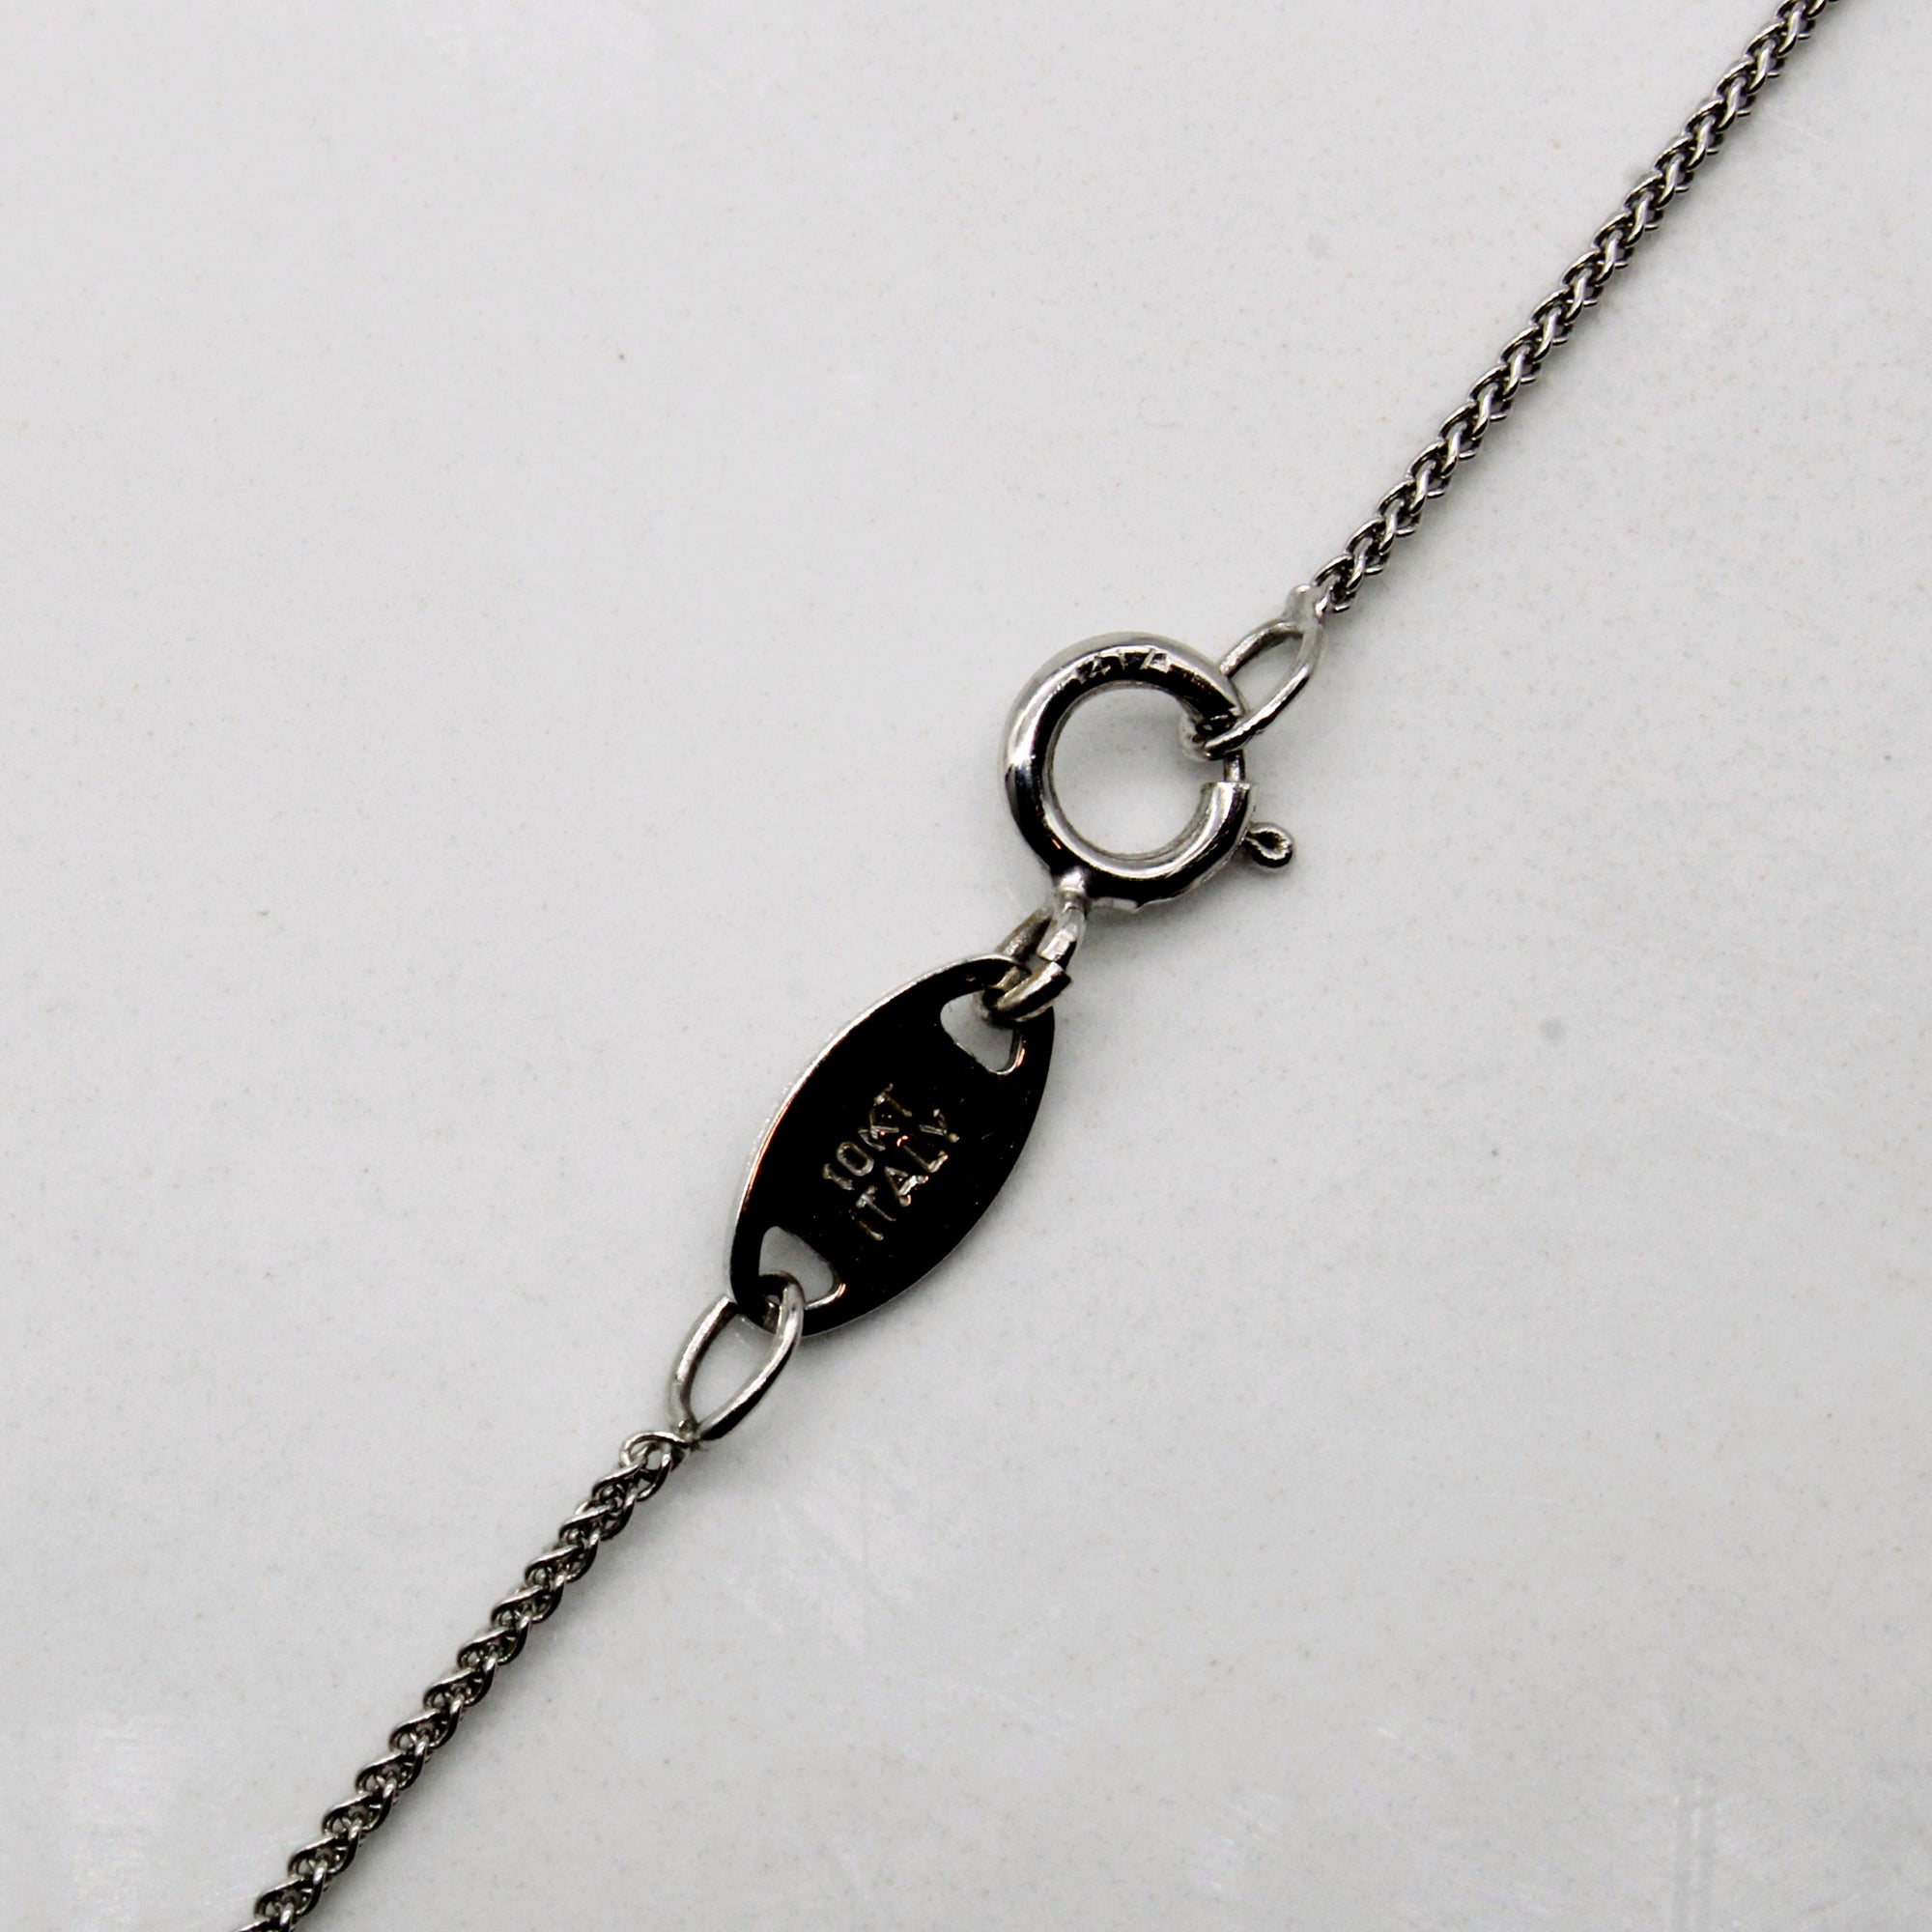 Aquamarine & Diamond Necklace | 0.91ct, 0.02ctw | 18